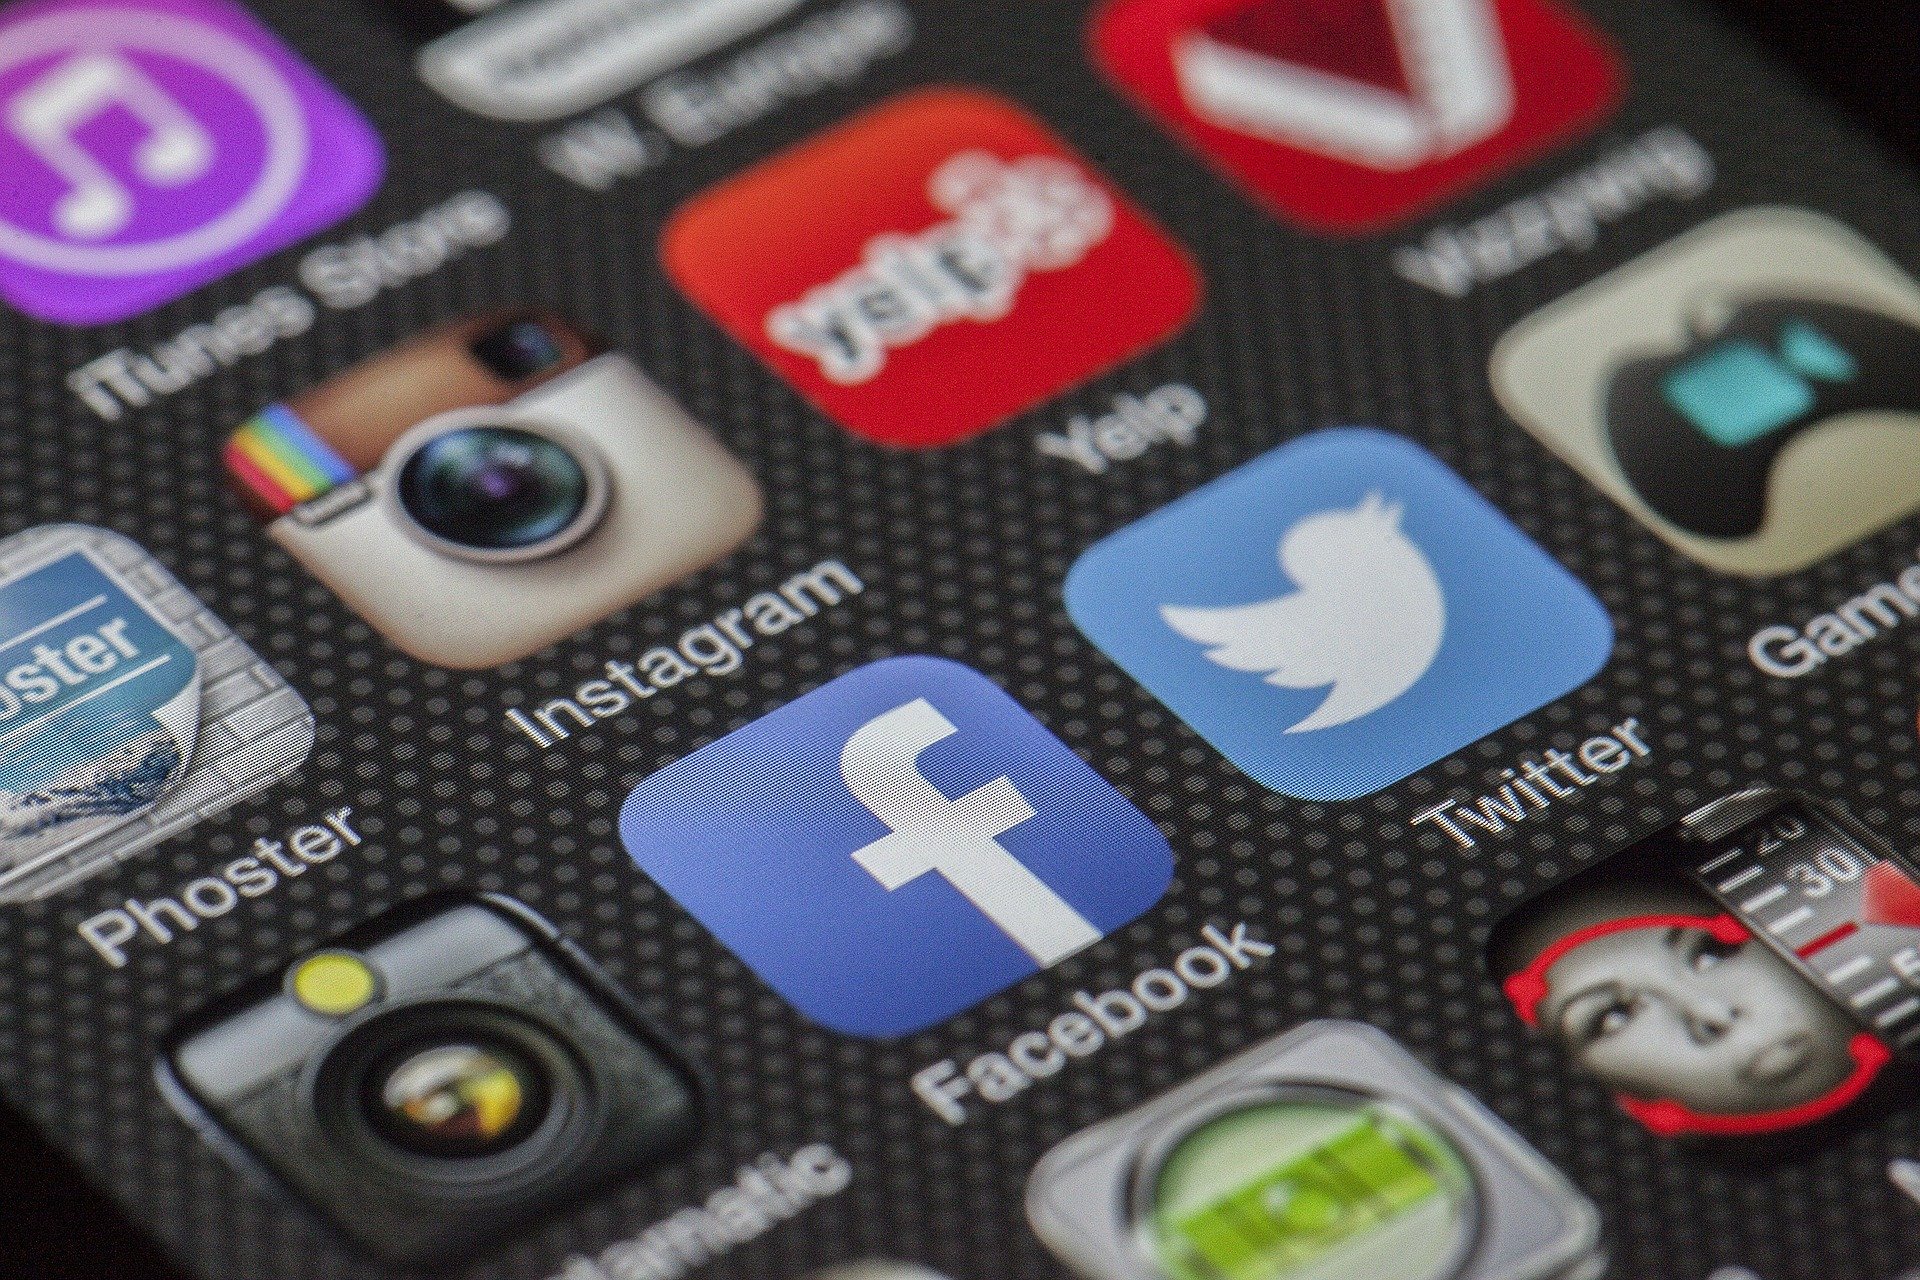 Slika prikazuje ikone aplikacija različitih društvenih mreža na mobitelu.